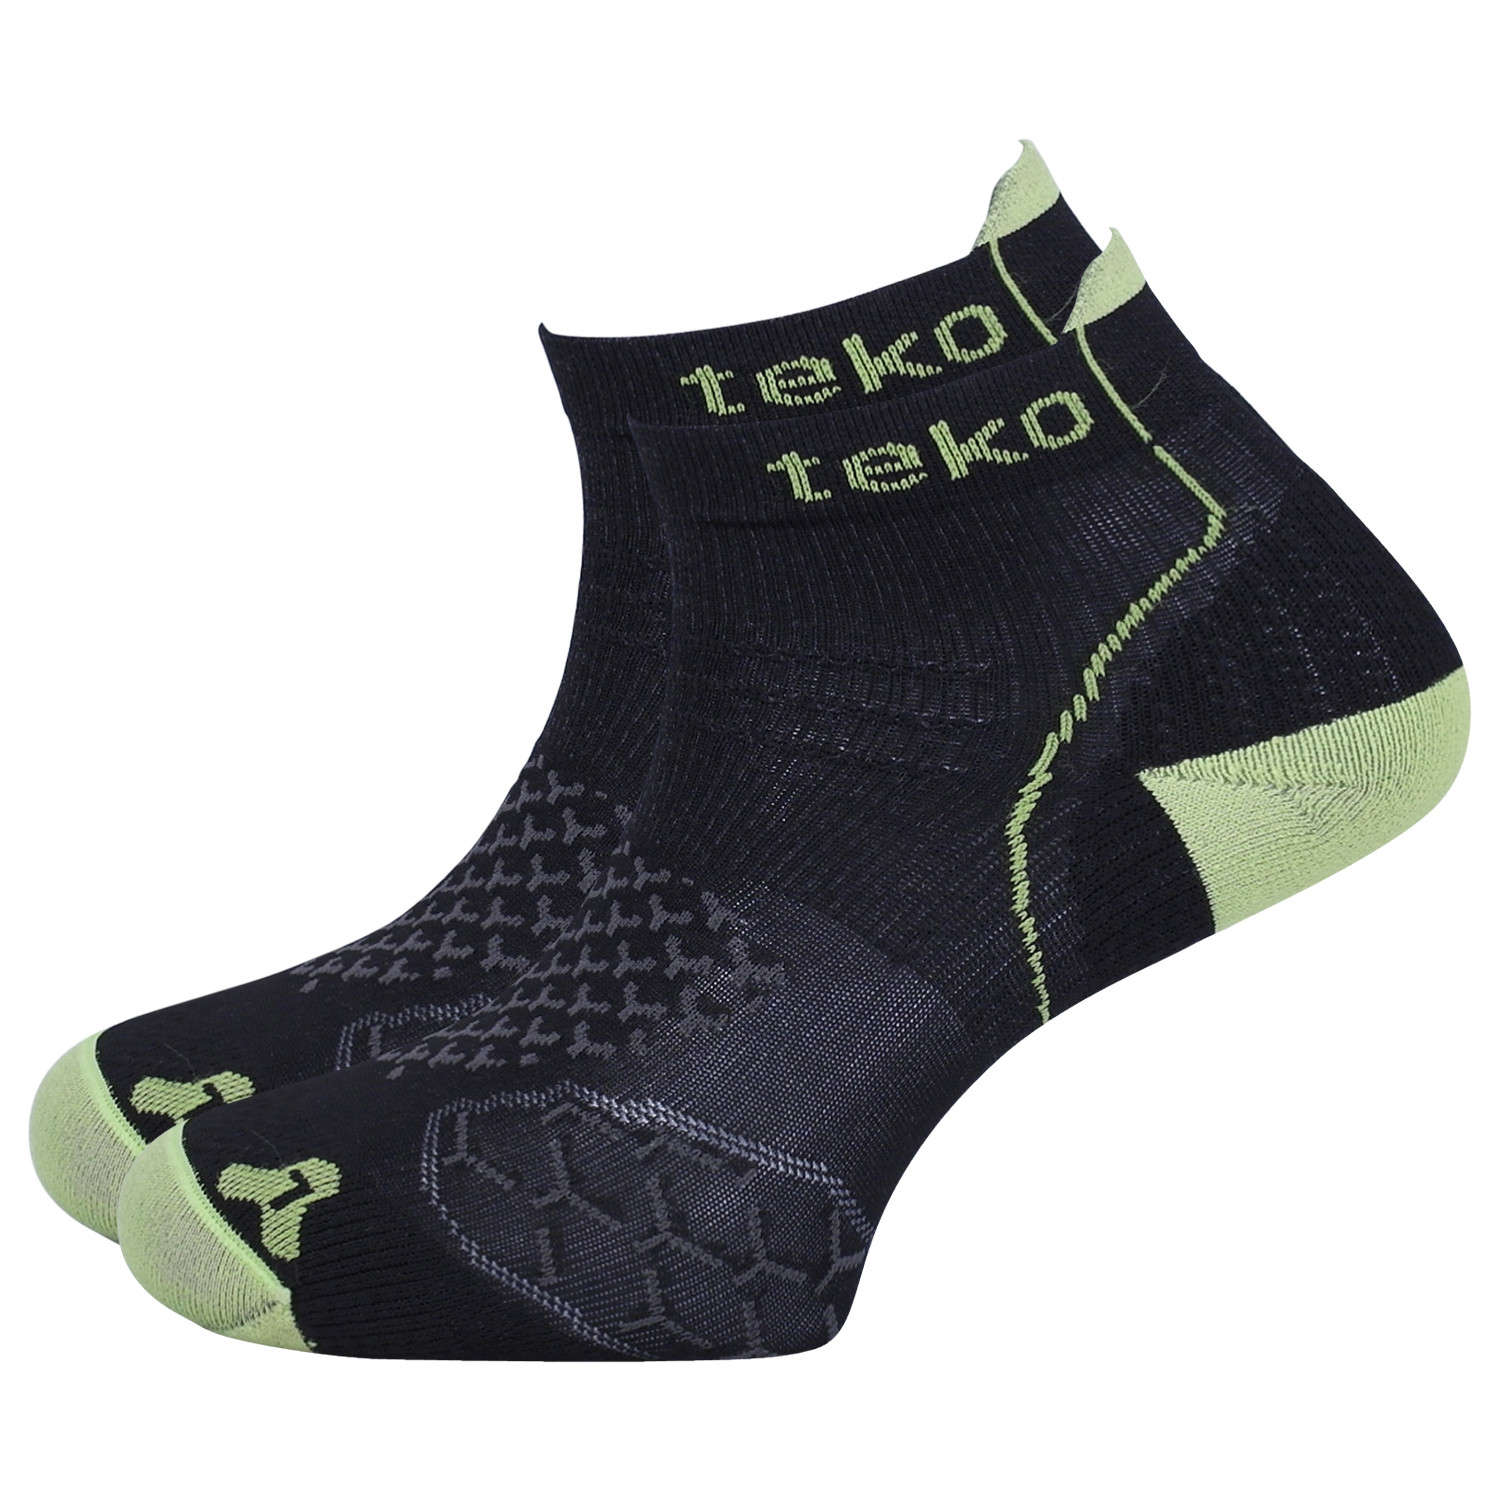 Teko Light Low Runfit Hardloopsokken Zwart/Groen Unisex